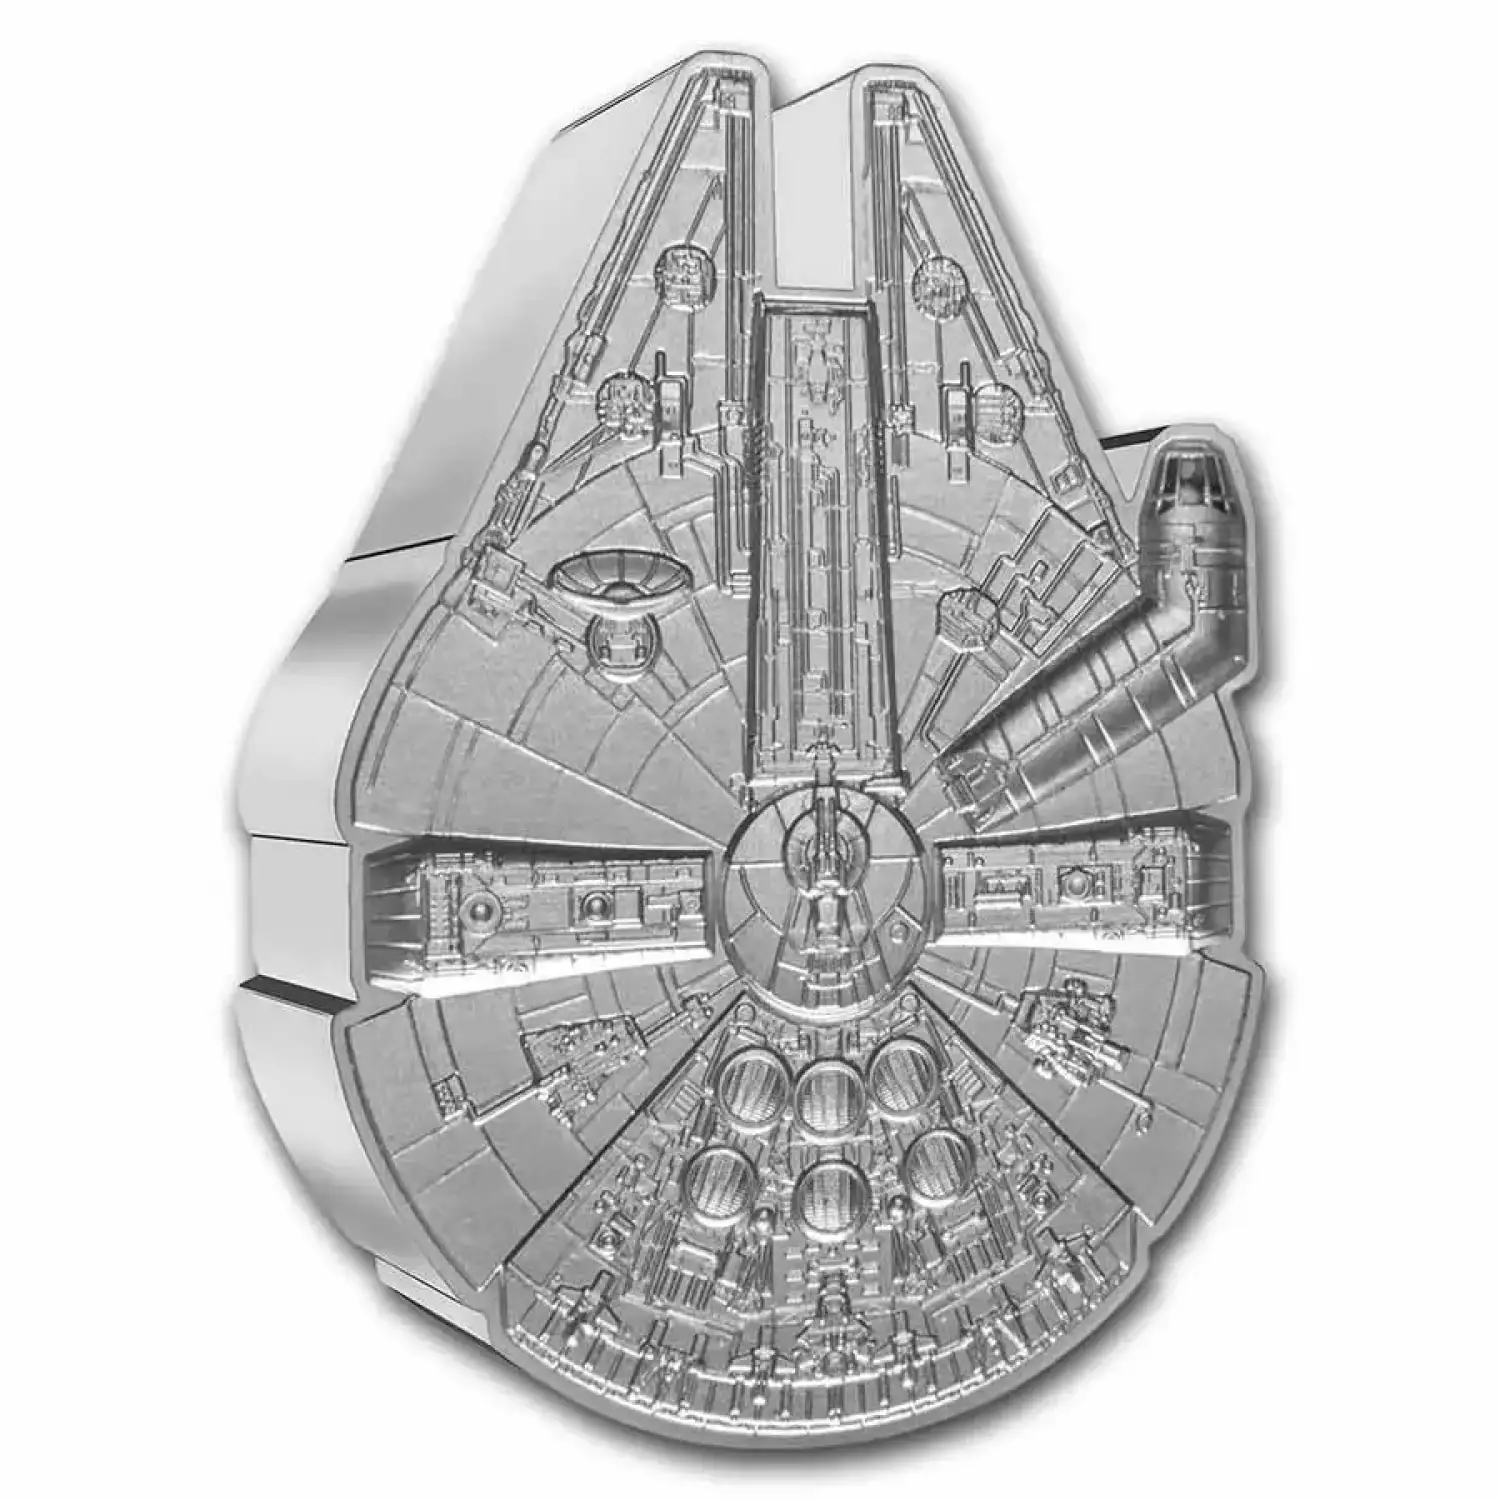 2021 Niue 1 oz Silver $2 Star Wars Millennium Falcon Shaped Coin (2)